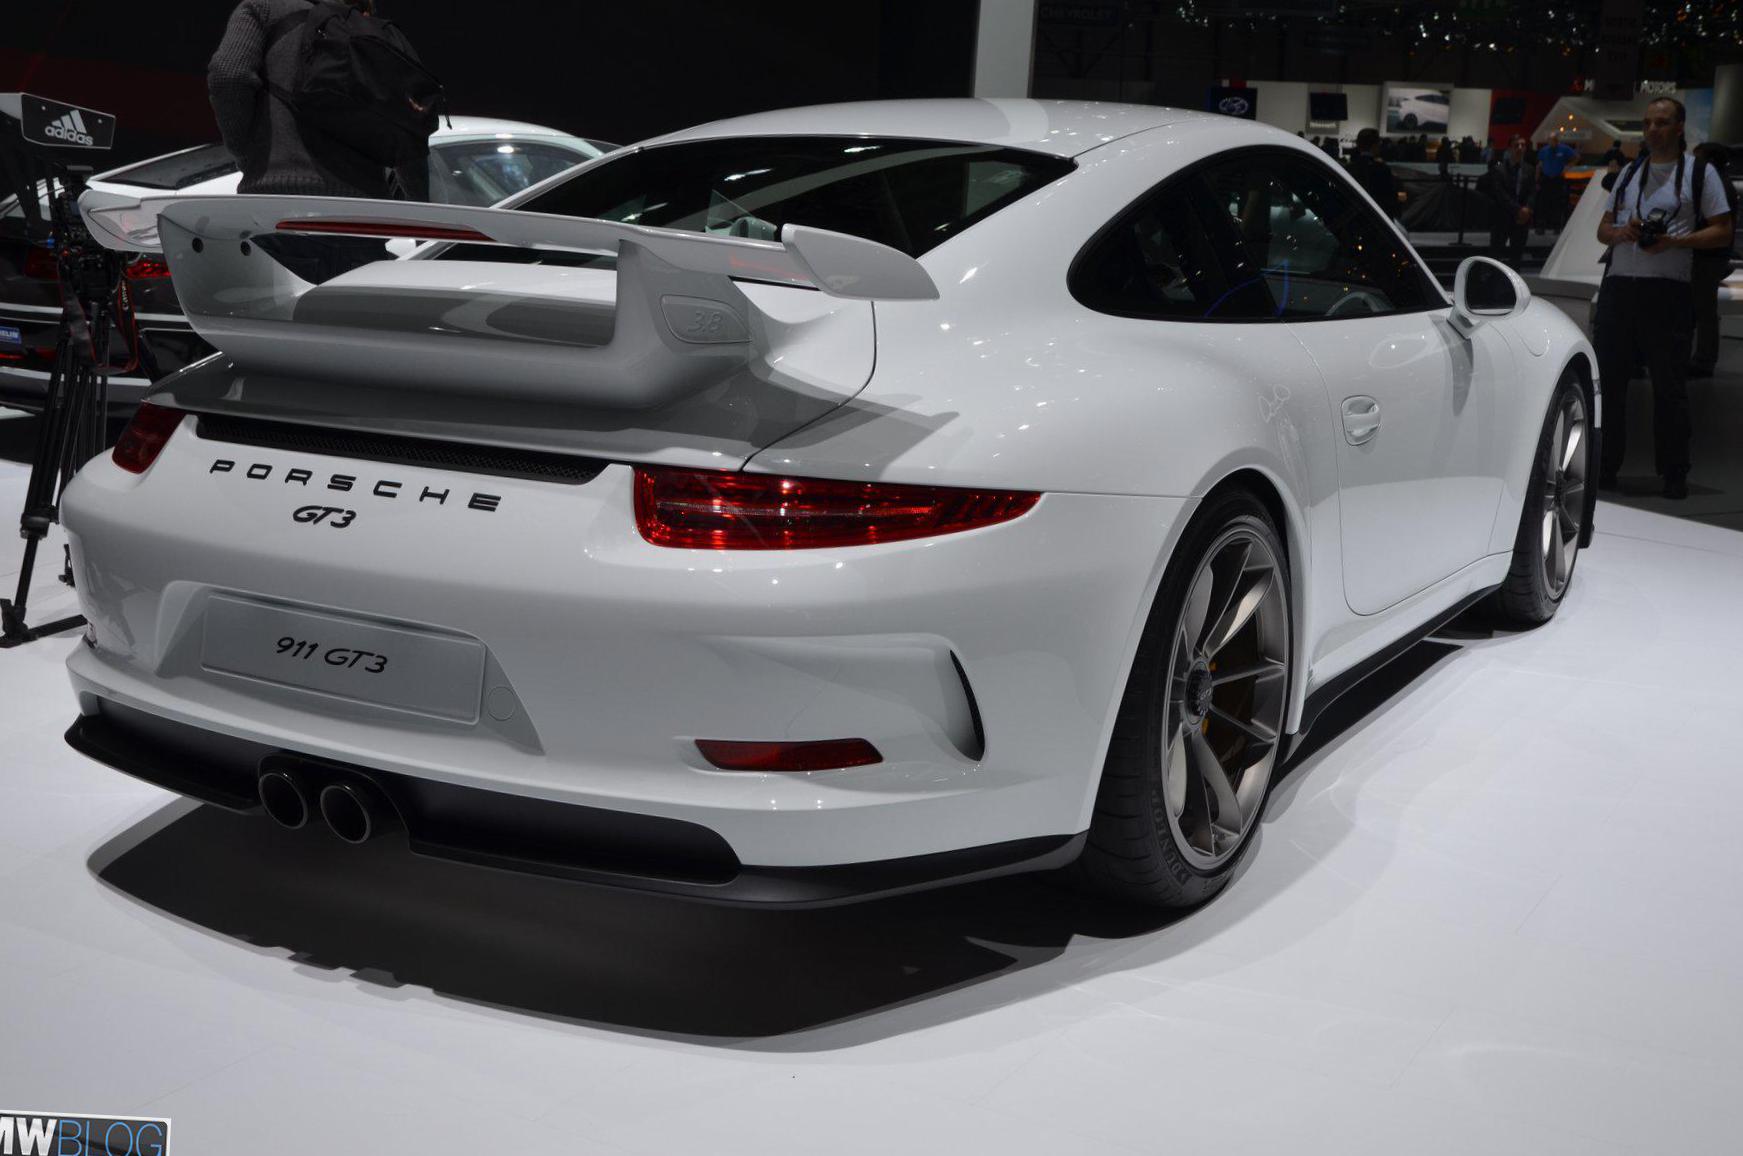 911 GT3 Porsche spec suv